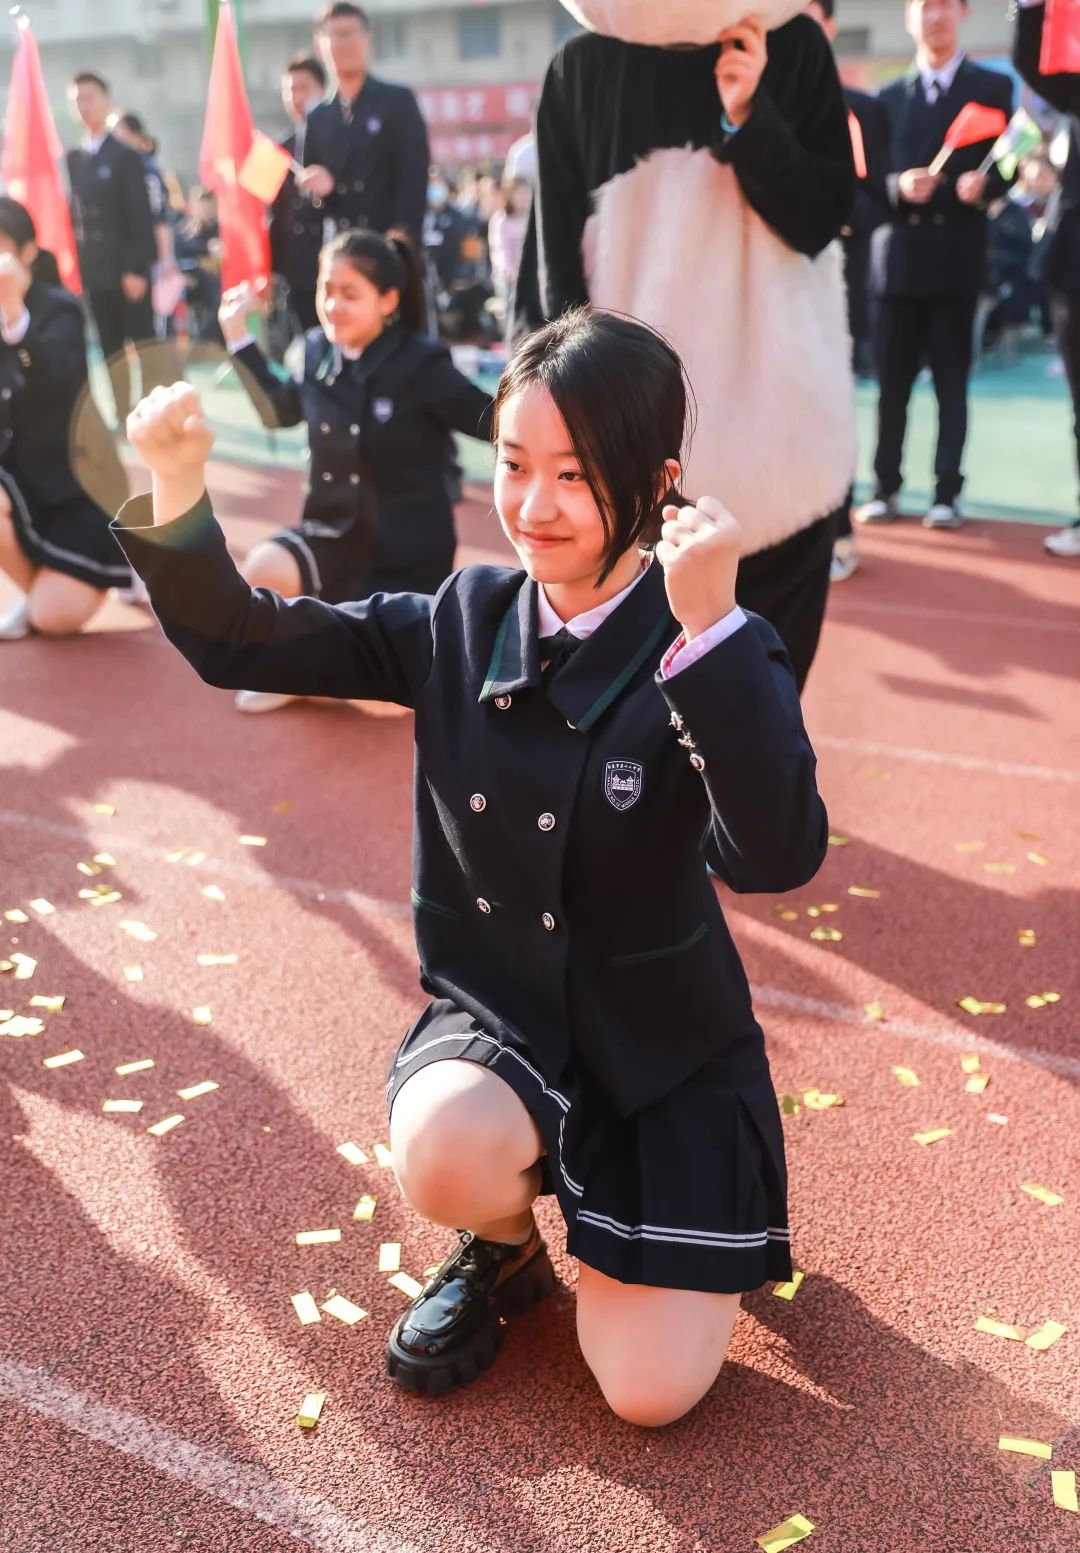 南京市第十二中学:乐享运动!这所百年名校体育节现场精彩纷呈